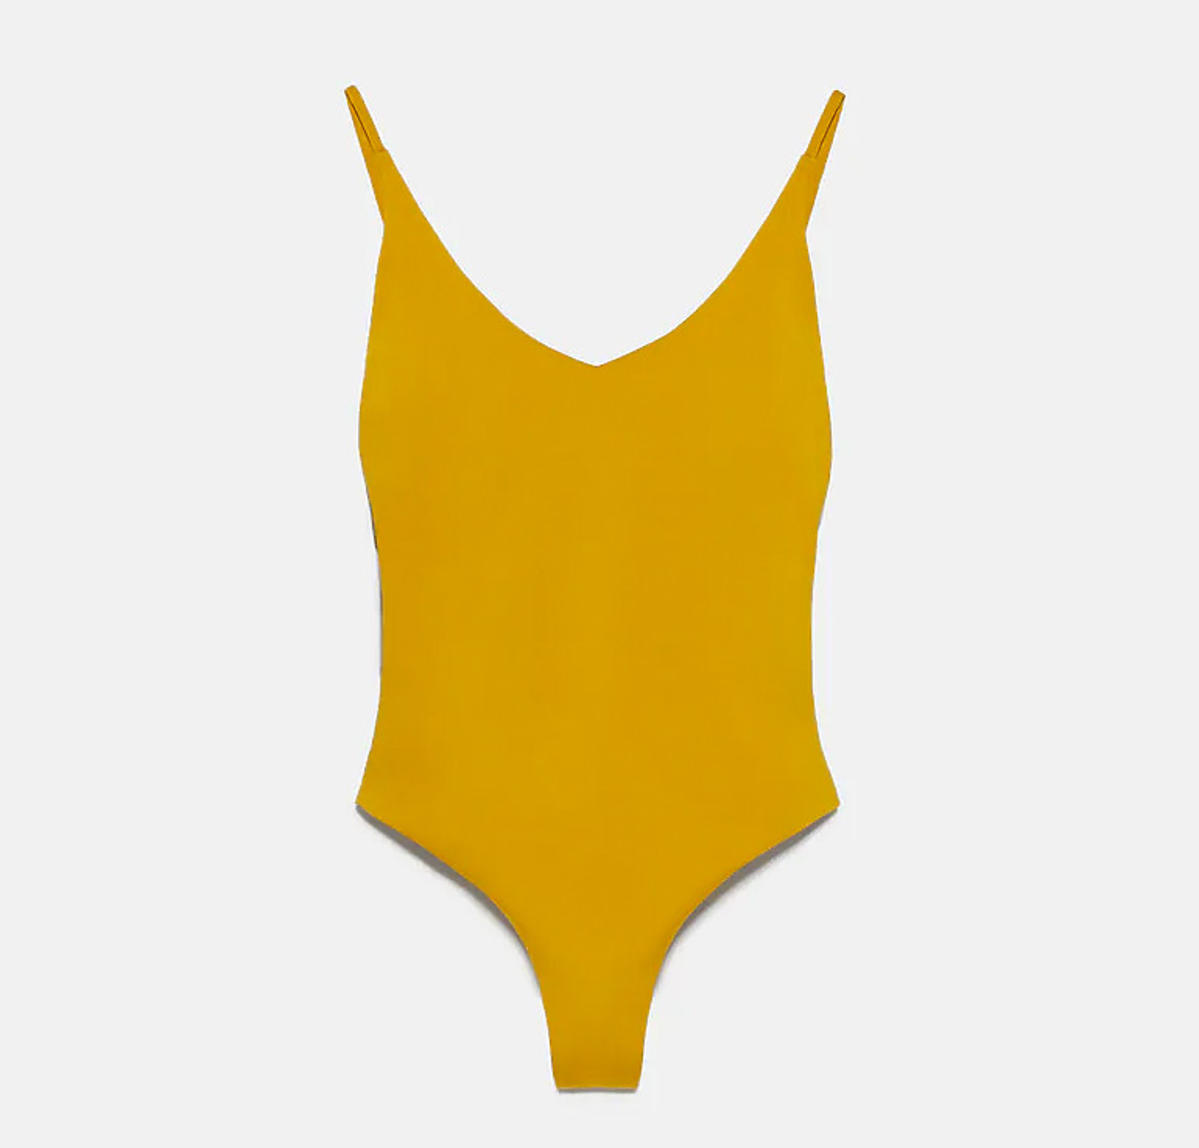 Musztardowy kostium kąpielowy, Zara, 89,99 zł